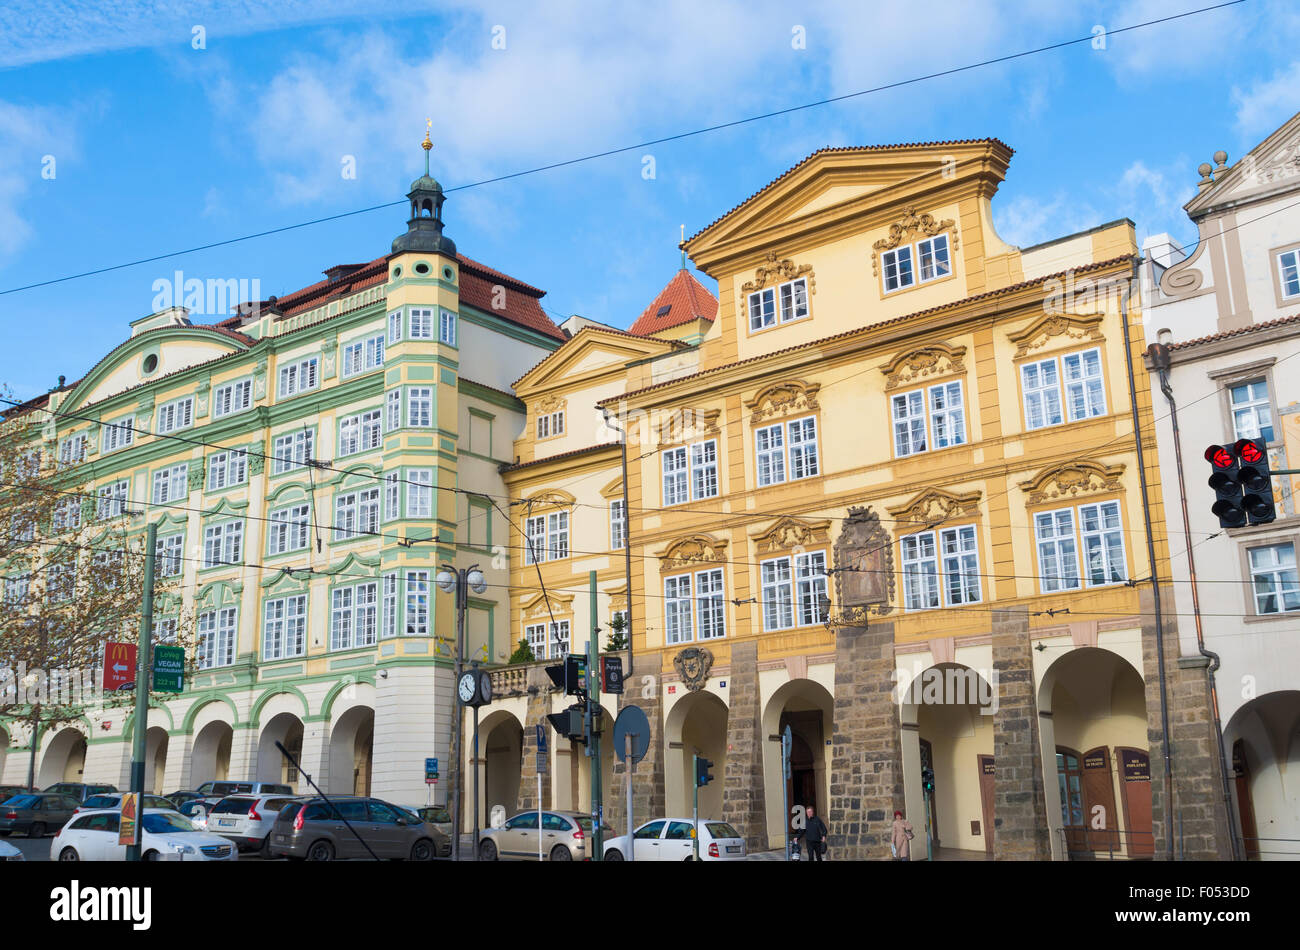 Typische Fassaden der Häuser im Zentrum unteren Stadt. Prag gilt als eines der schönsten c Stockfoto